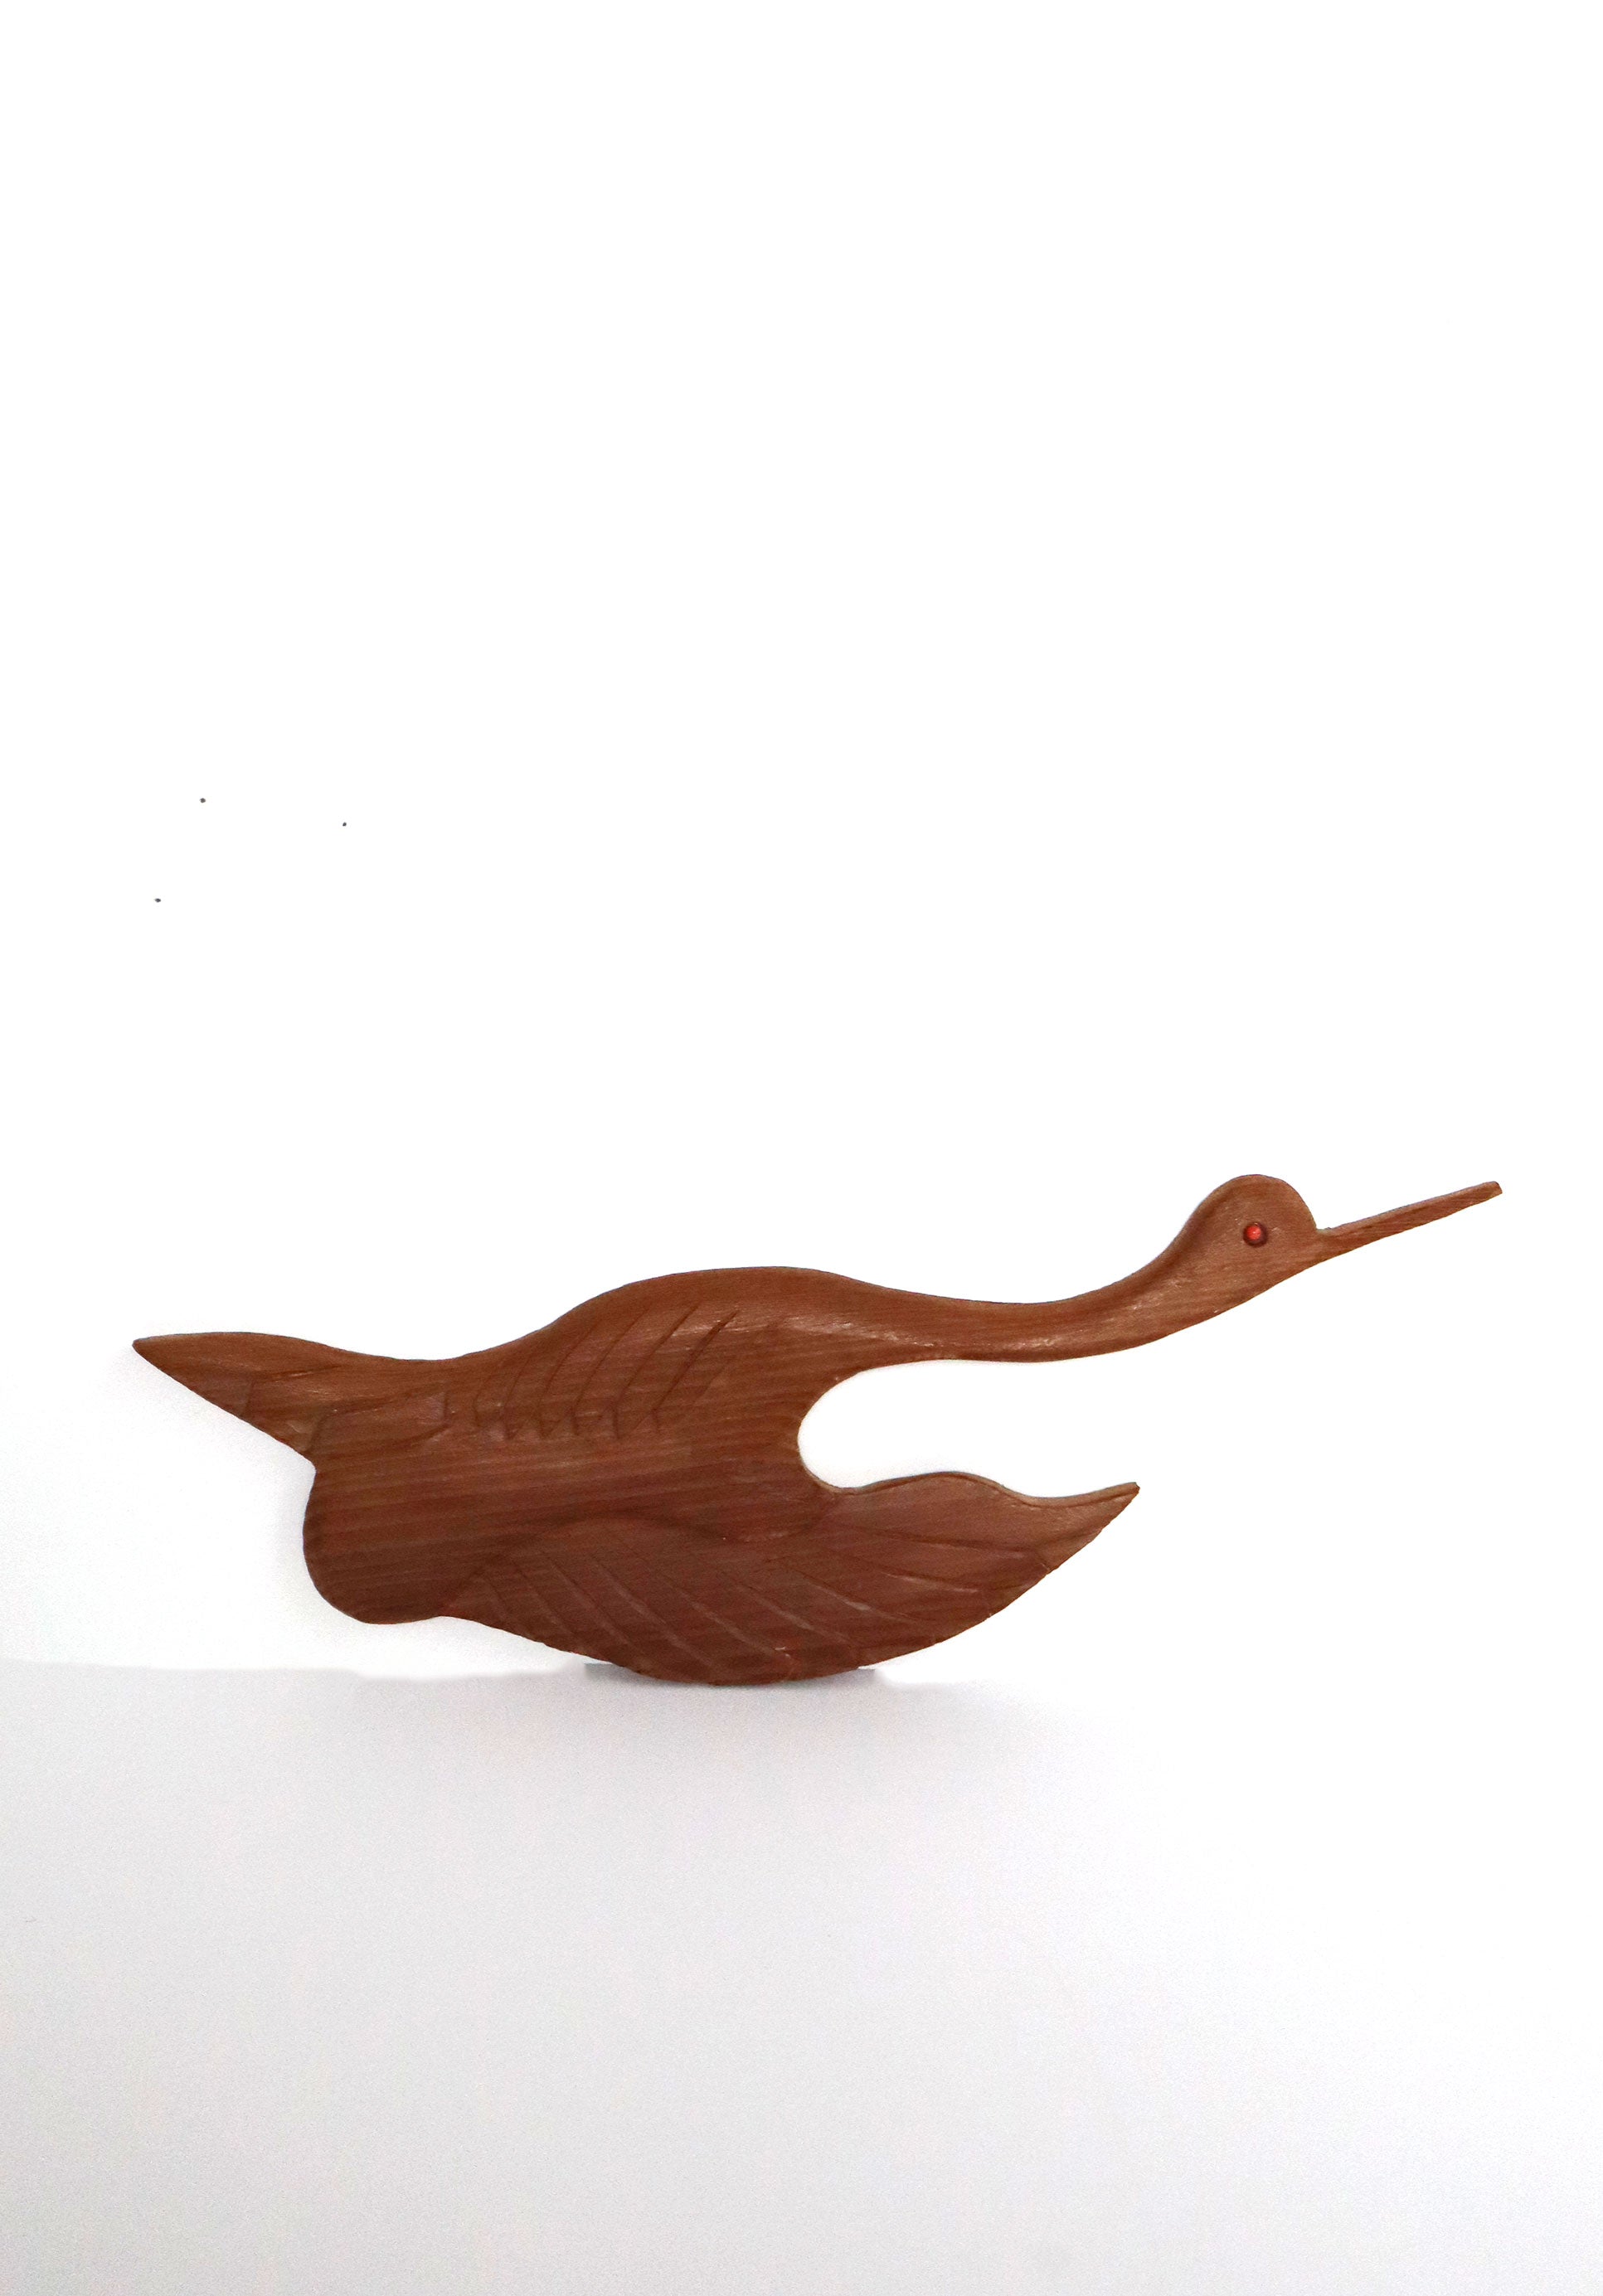 Vintage Hand-Carved Wooden Bird Set